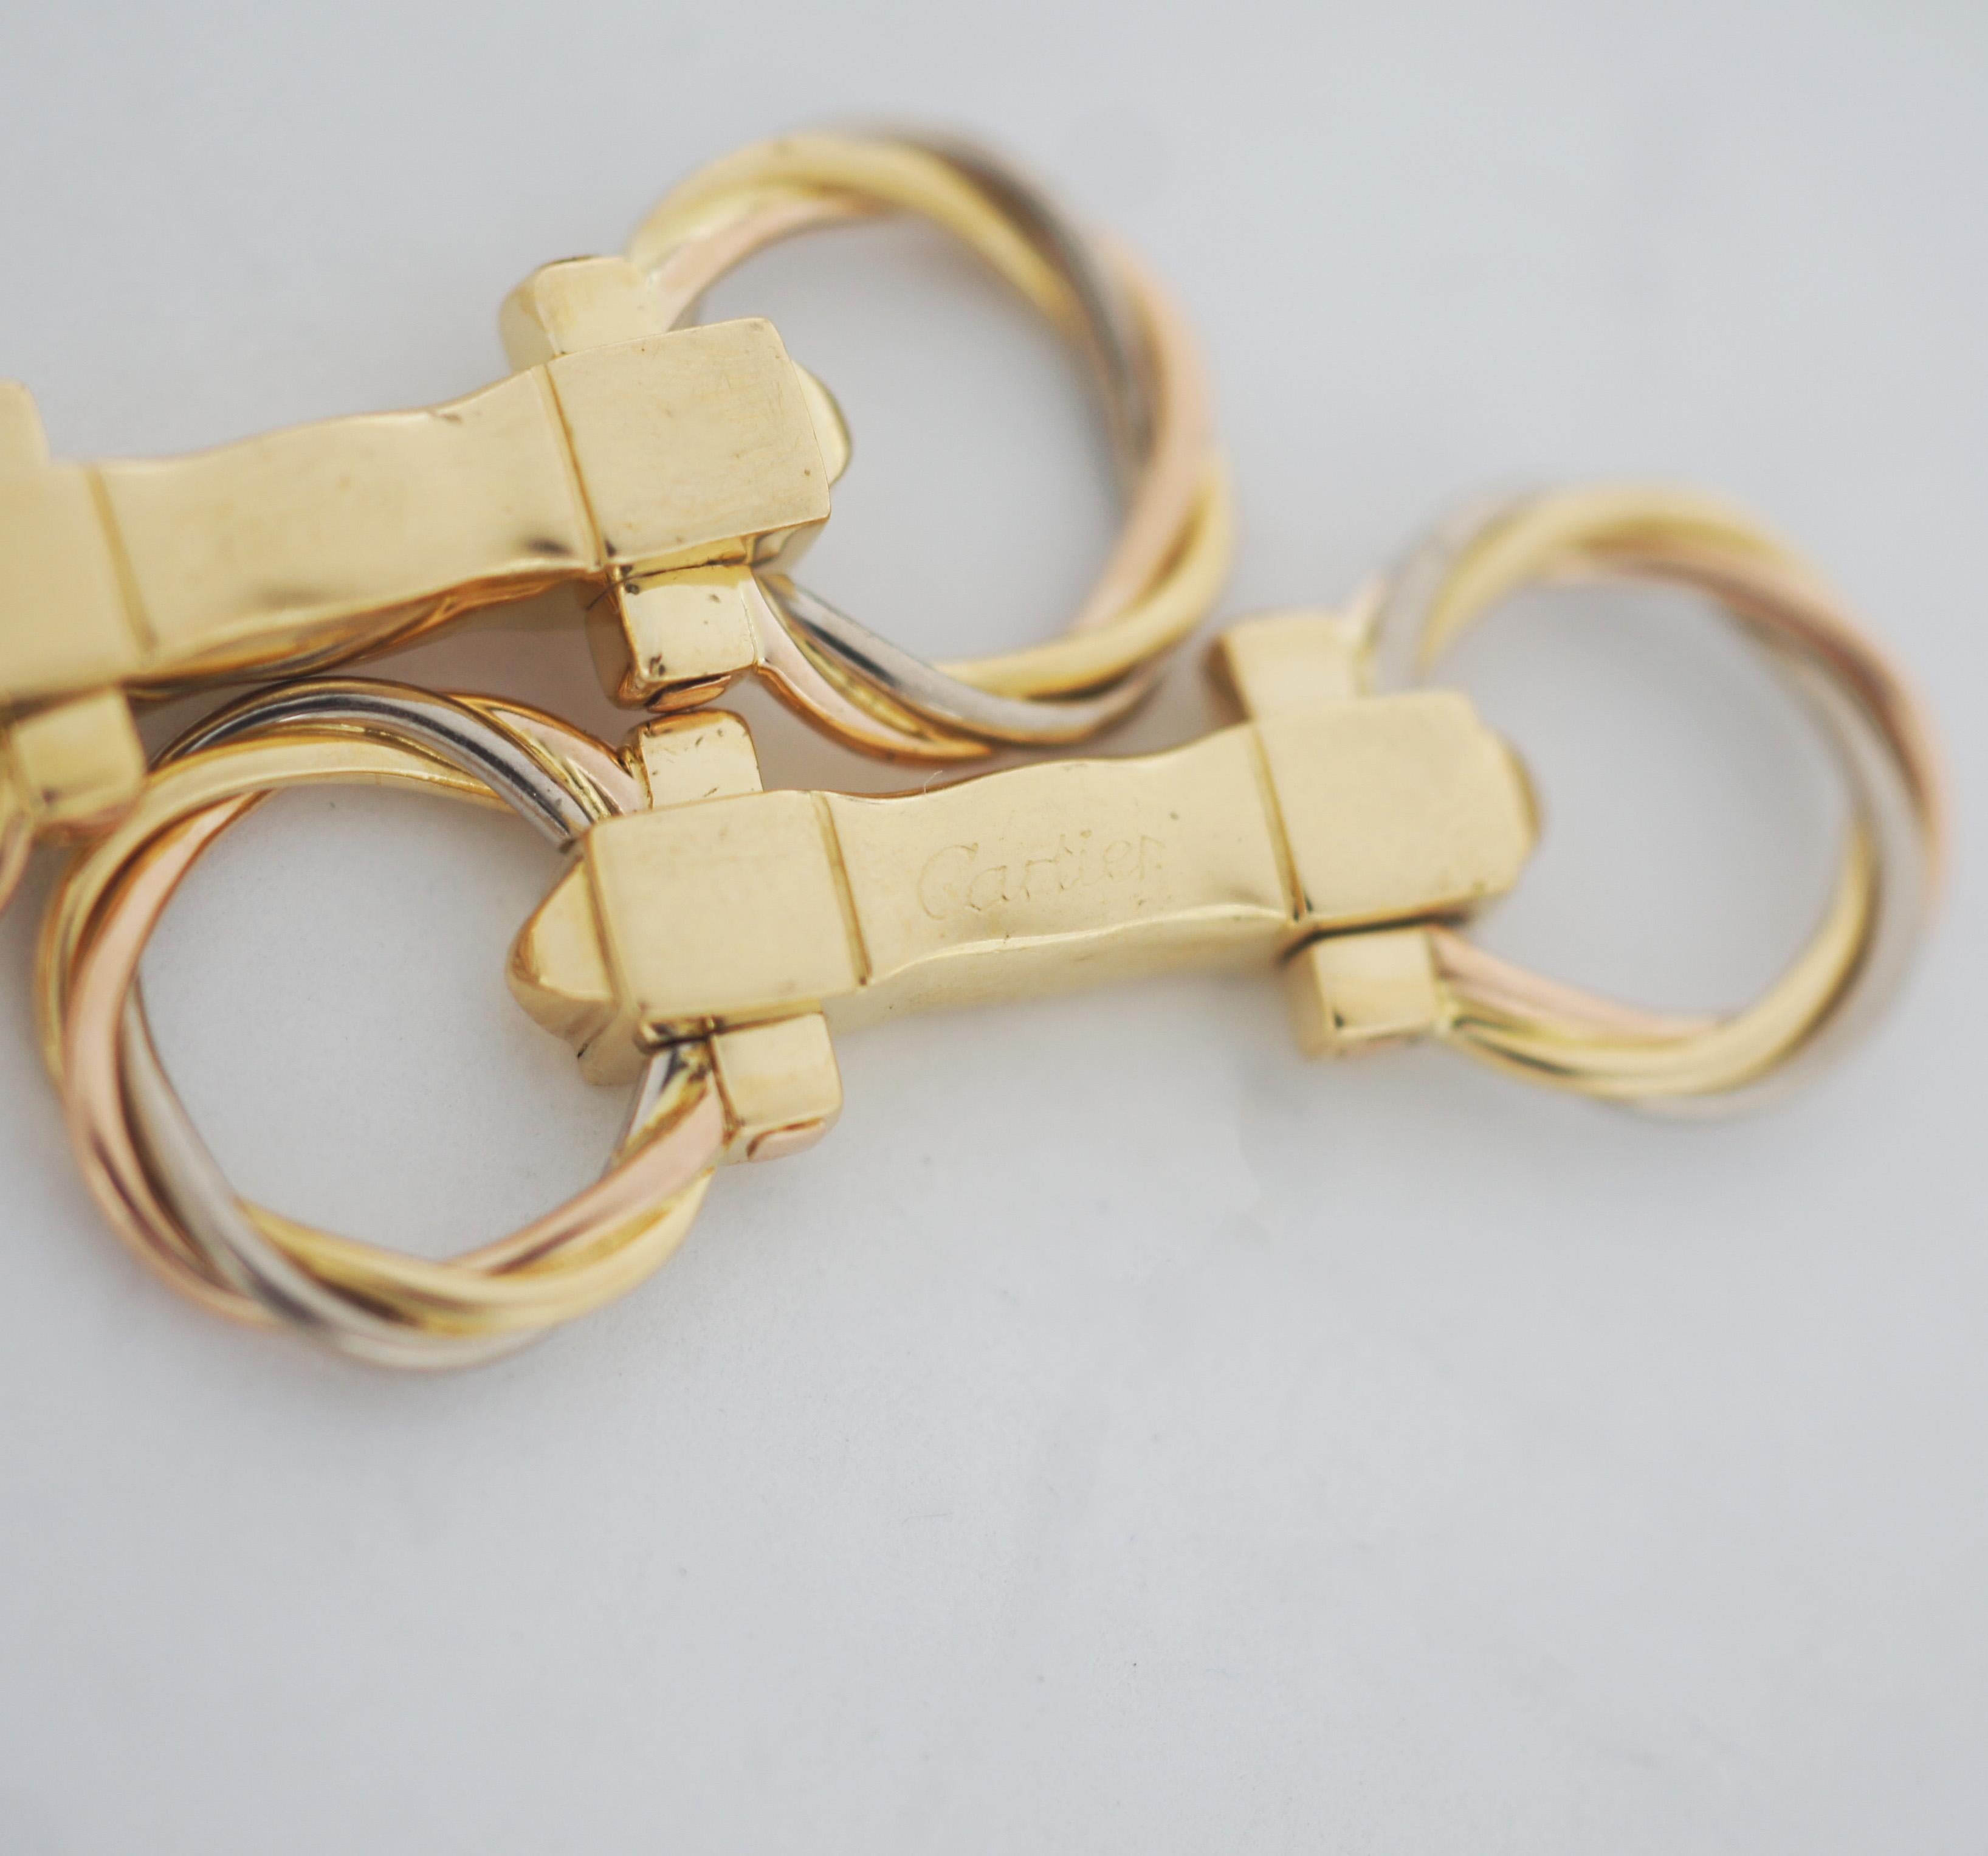 Paire de boutons de manchette articulés Cartier Trinity en 3 ors, composée de 2 anneaux torsadés en or jaune, or rose et or blanc.
Signature : Cartier et numérotée.
Environ 1,5